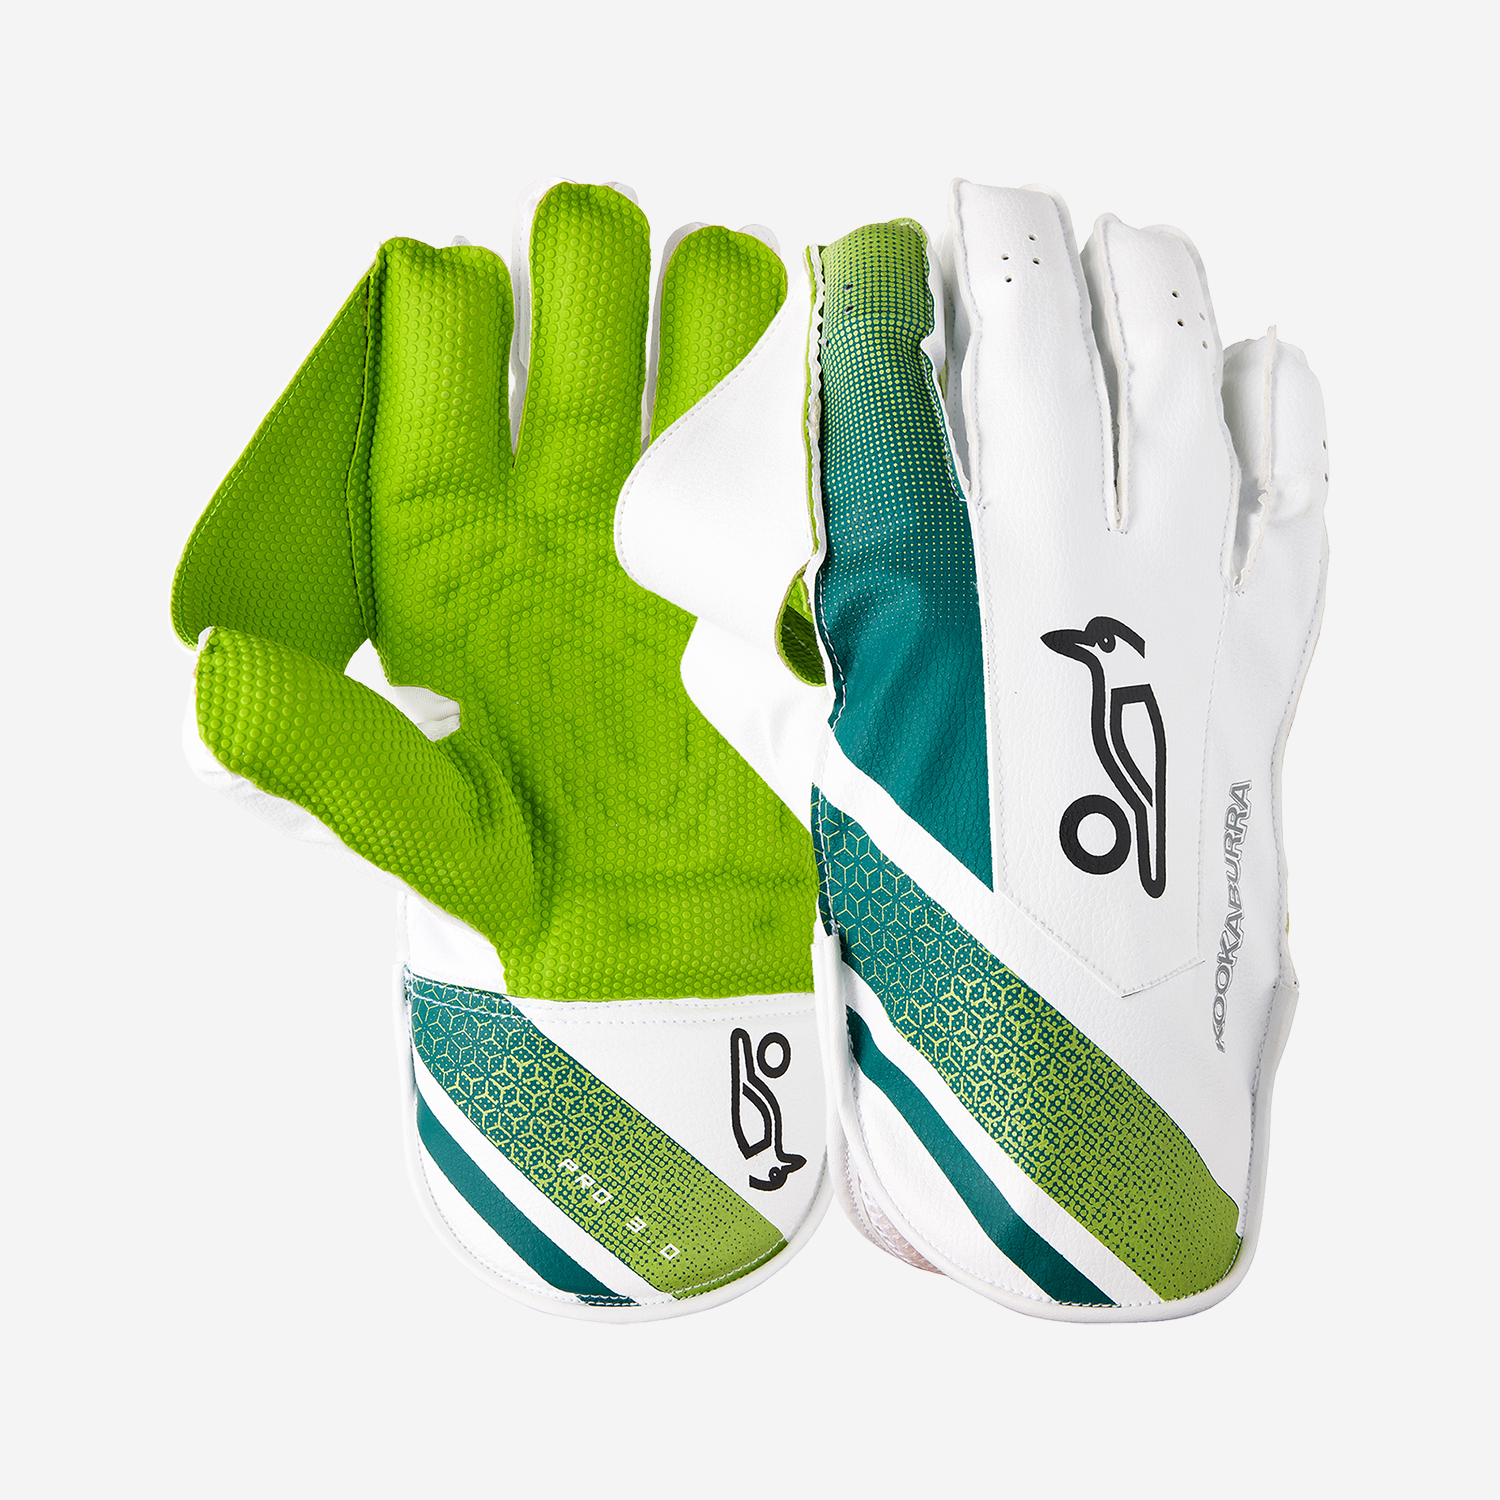 Kahuna WK Gloves Pro